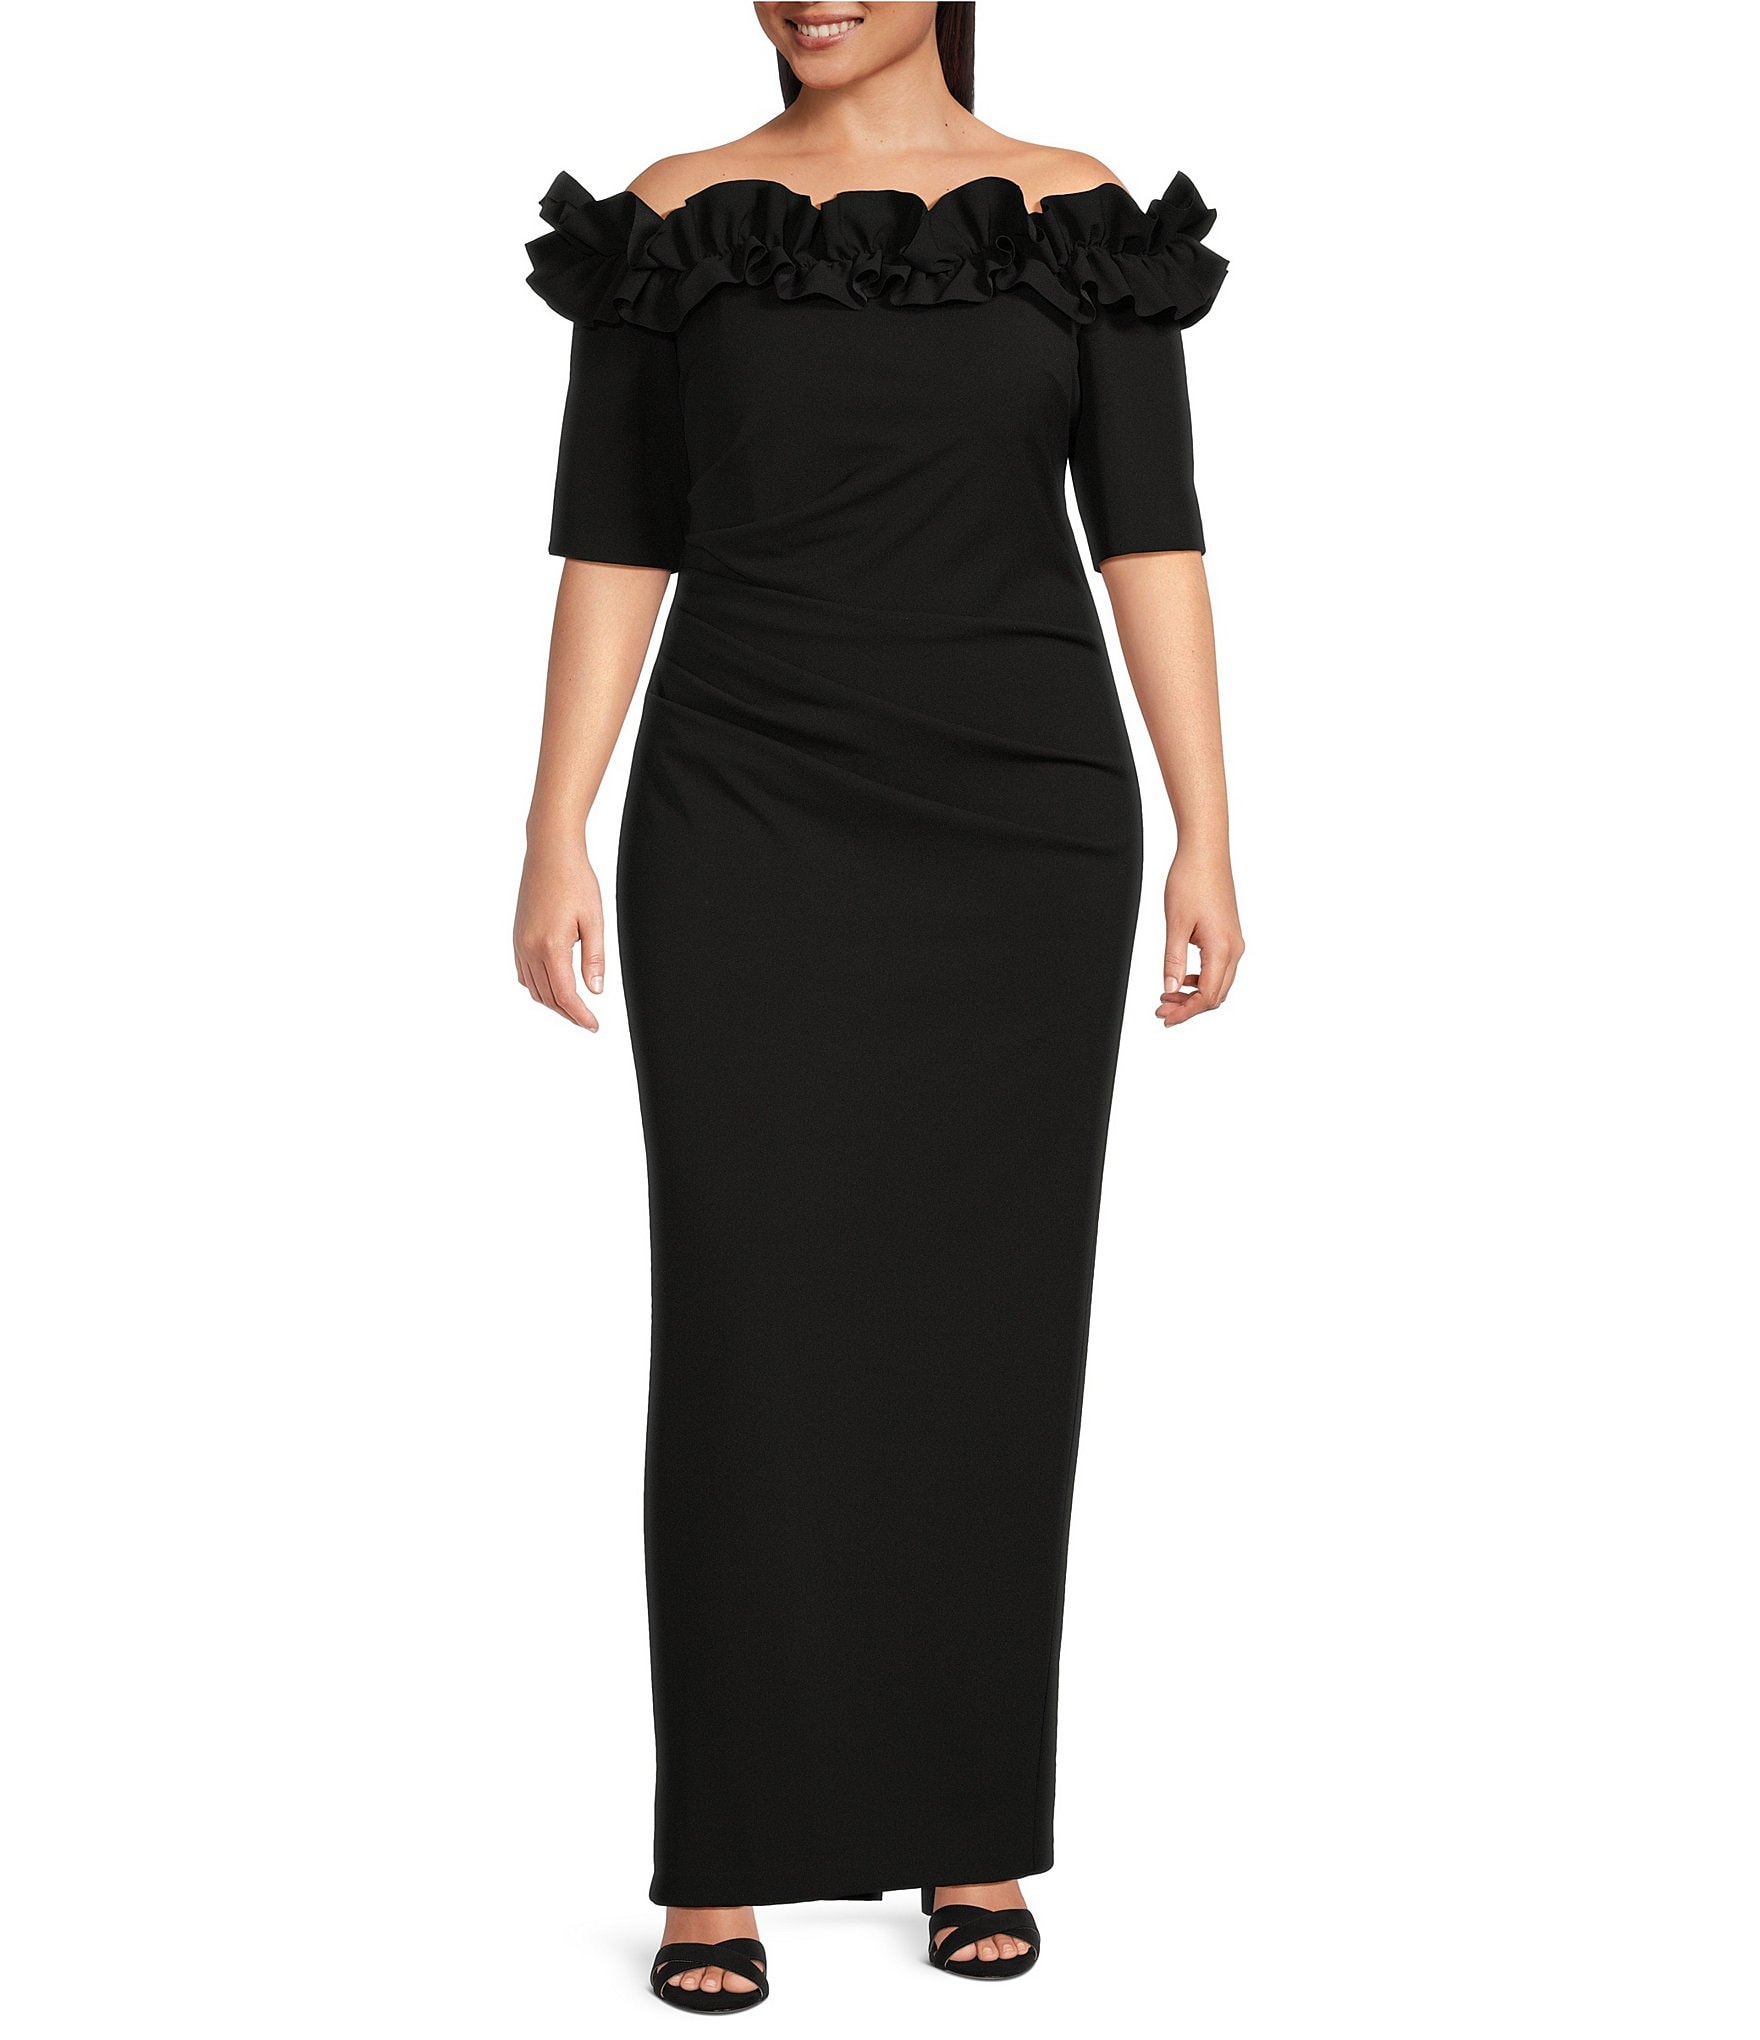 Gå i stykker pie Landbrugs Black Women's Plus-Size Dresses & Gowns | Dillard's